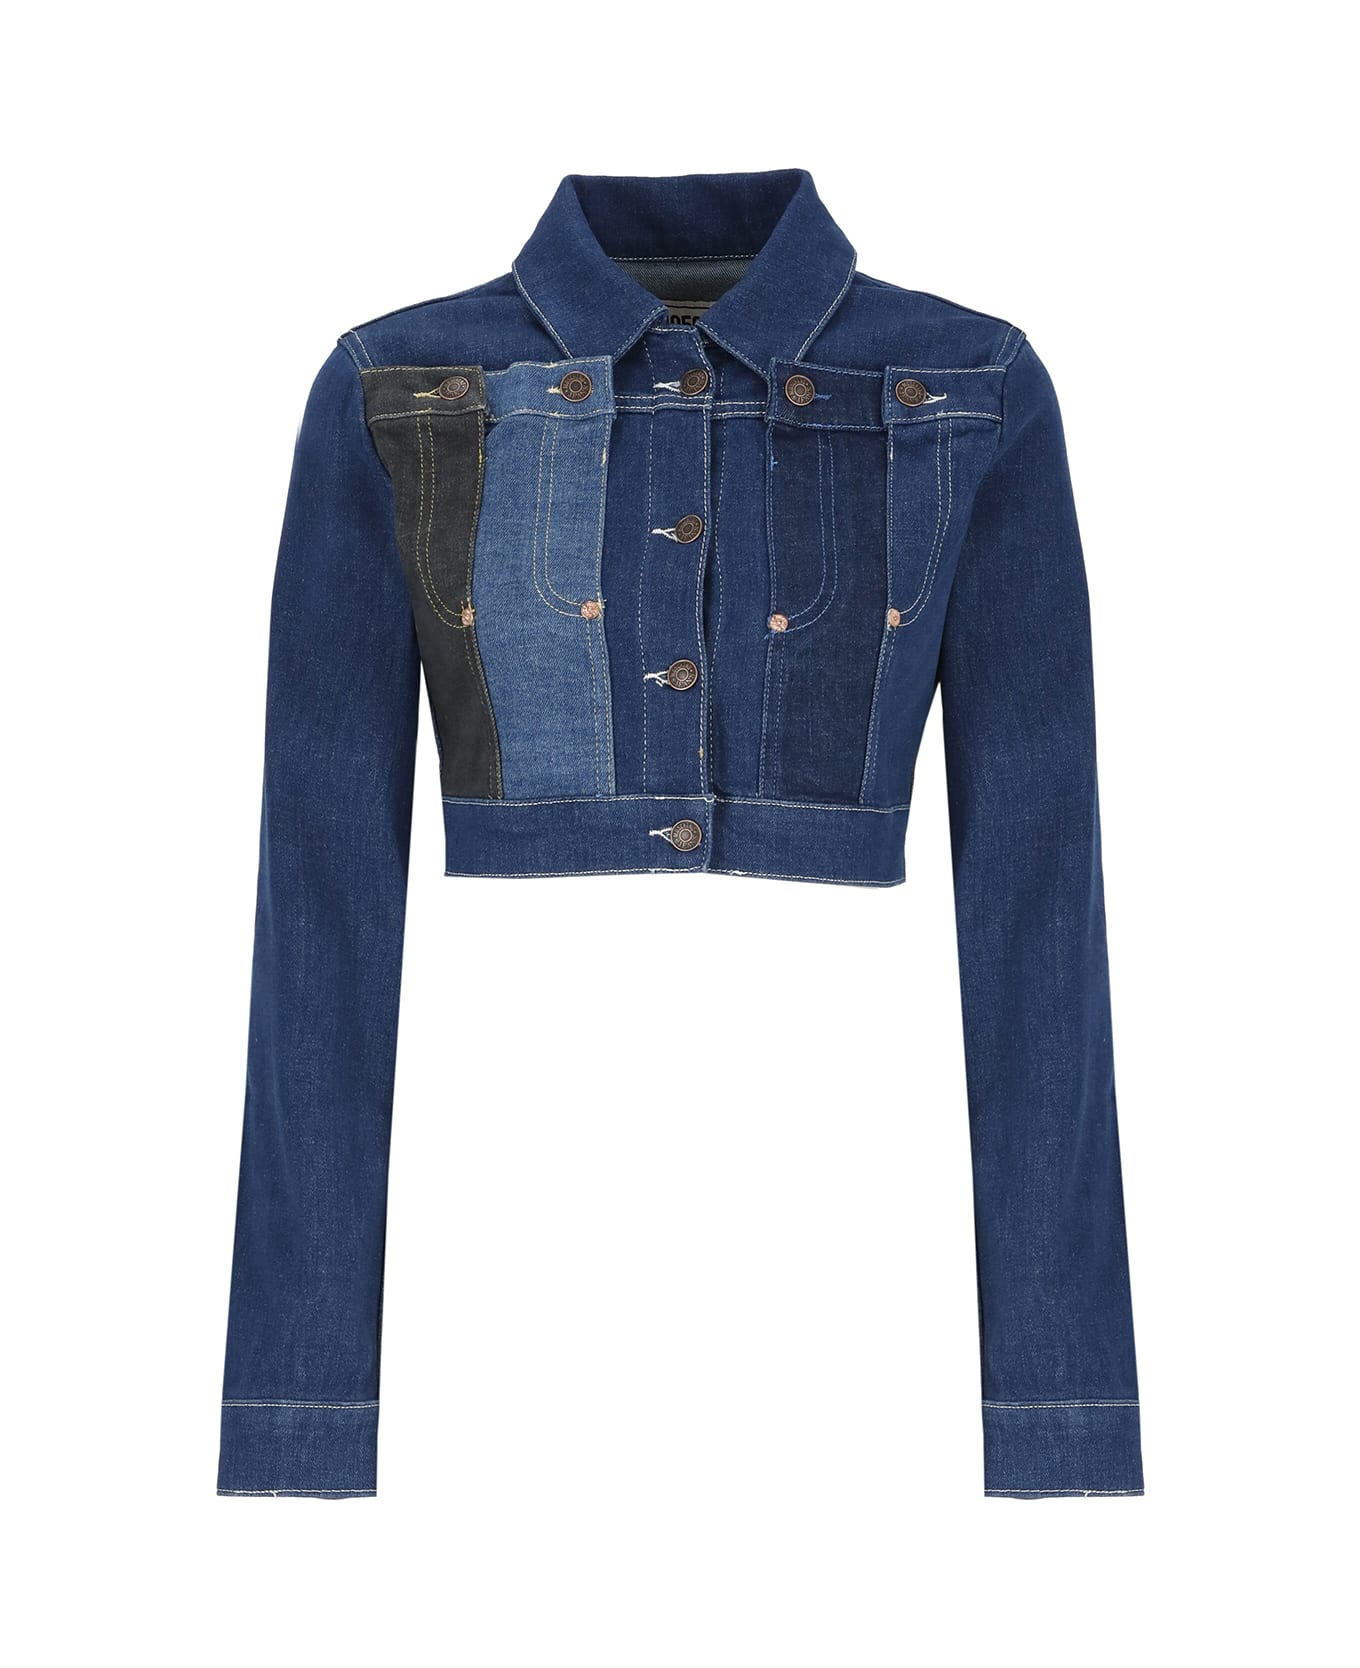 M05CH1N0 Jeans Cotton Denim Jacket - Blue